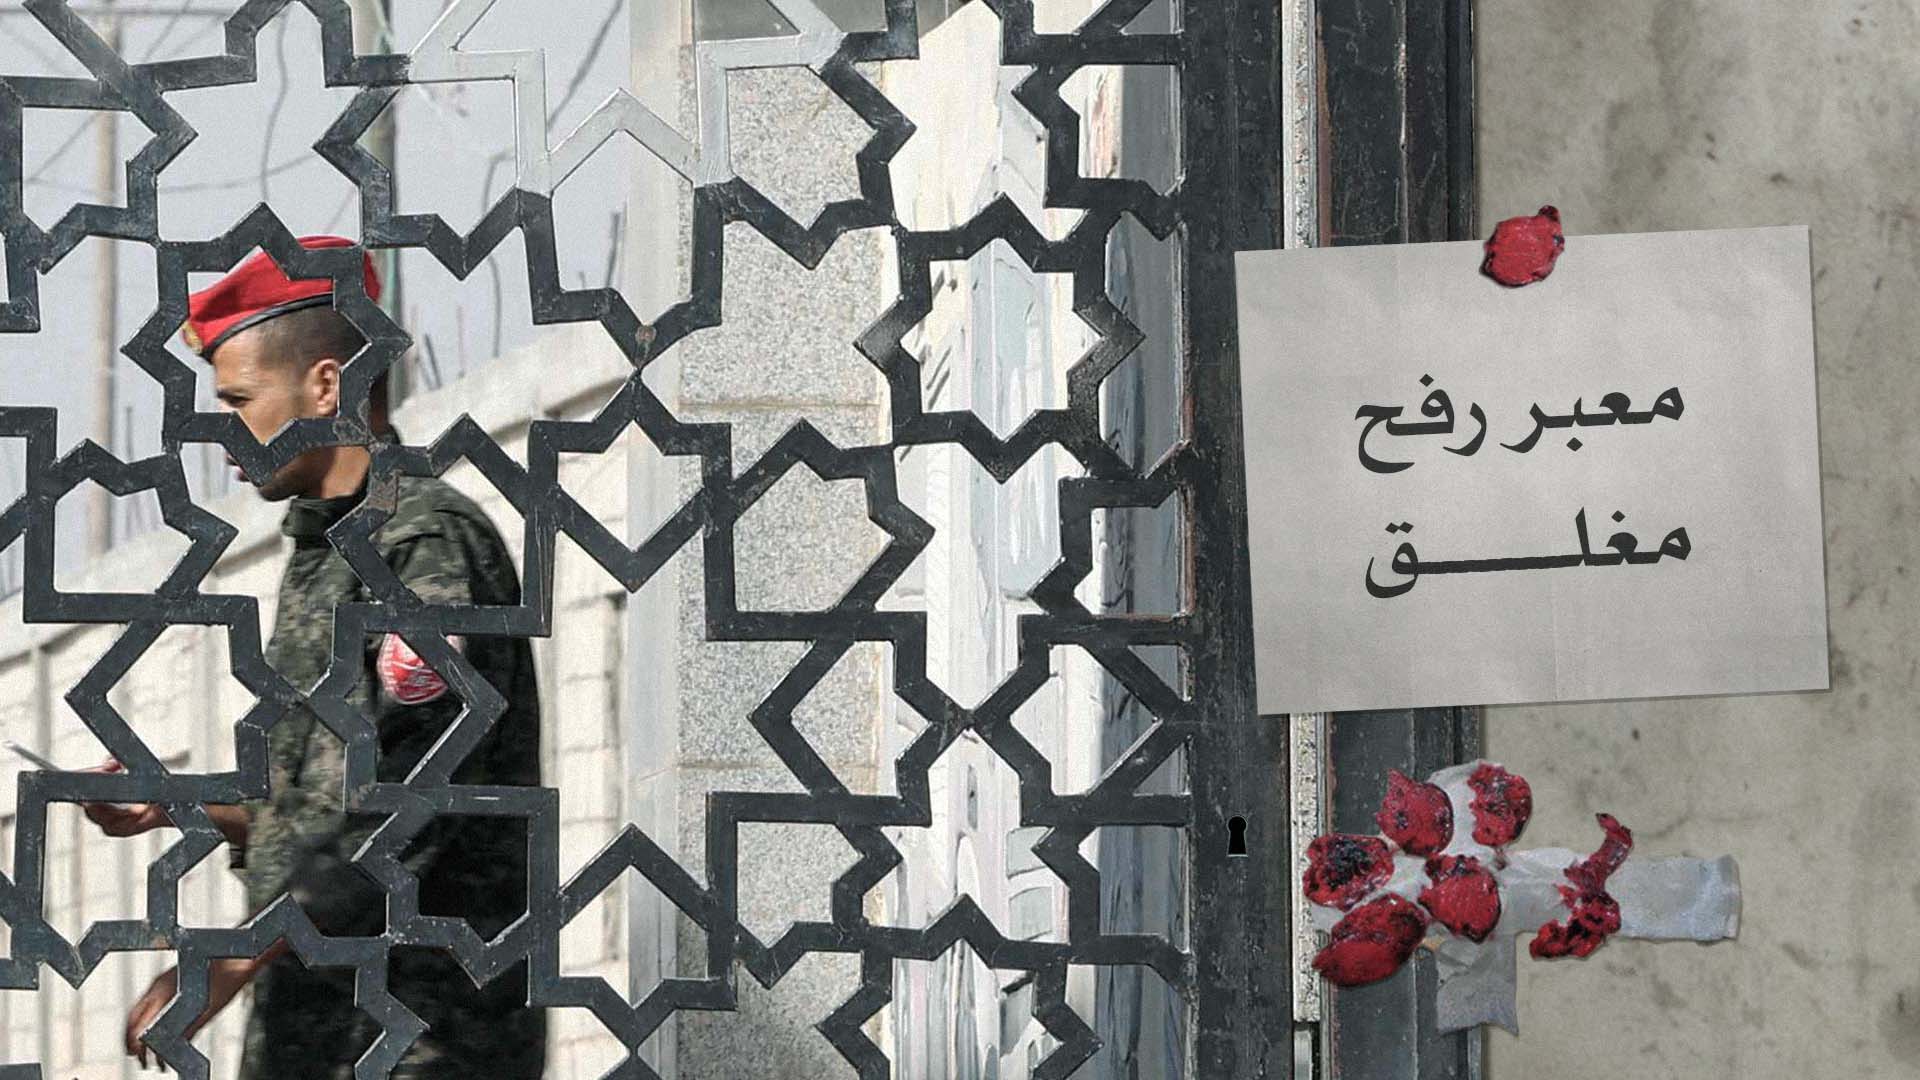 صورة بعد اكتشافها مخالفة الفلسطينيين لتعليماتها: مصر تغلق معبر رفح بالشمع الأحمر